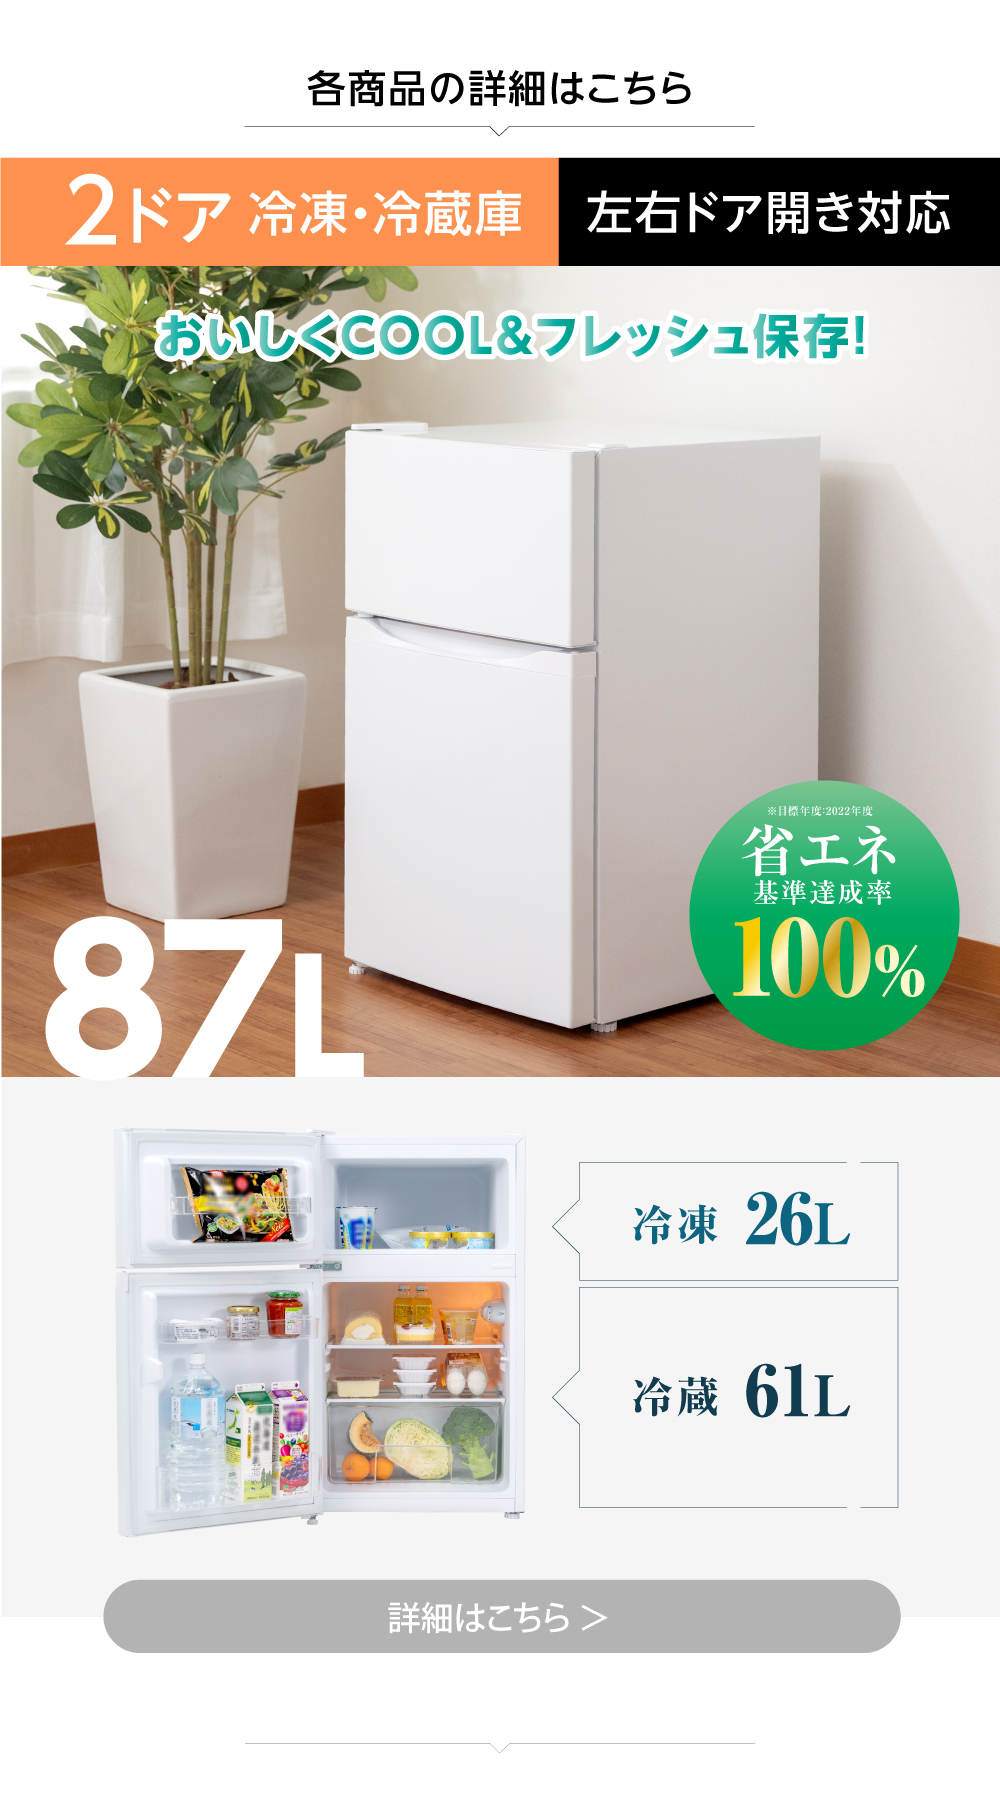 純正激安 冷蔵庫 洗濯機 電子レンジ 新生活応援セット 家電3点セット 